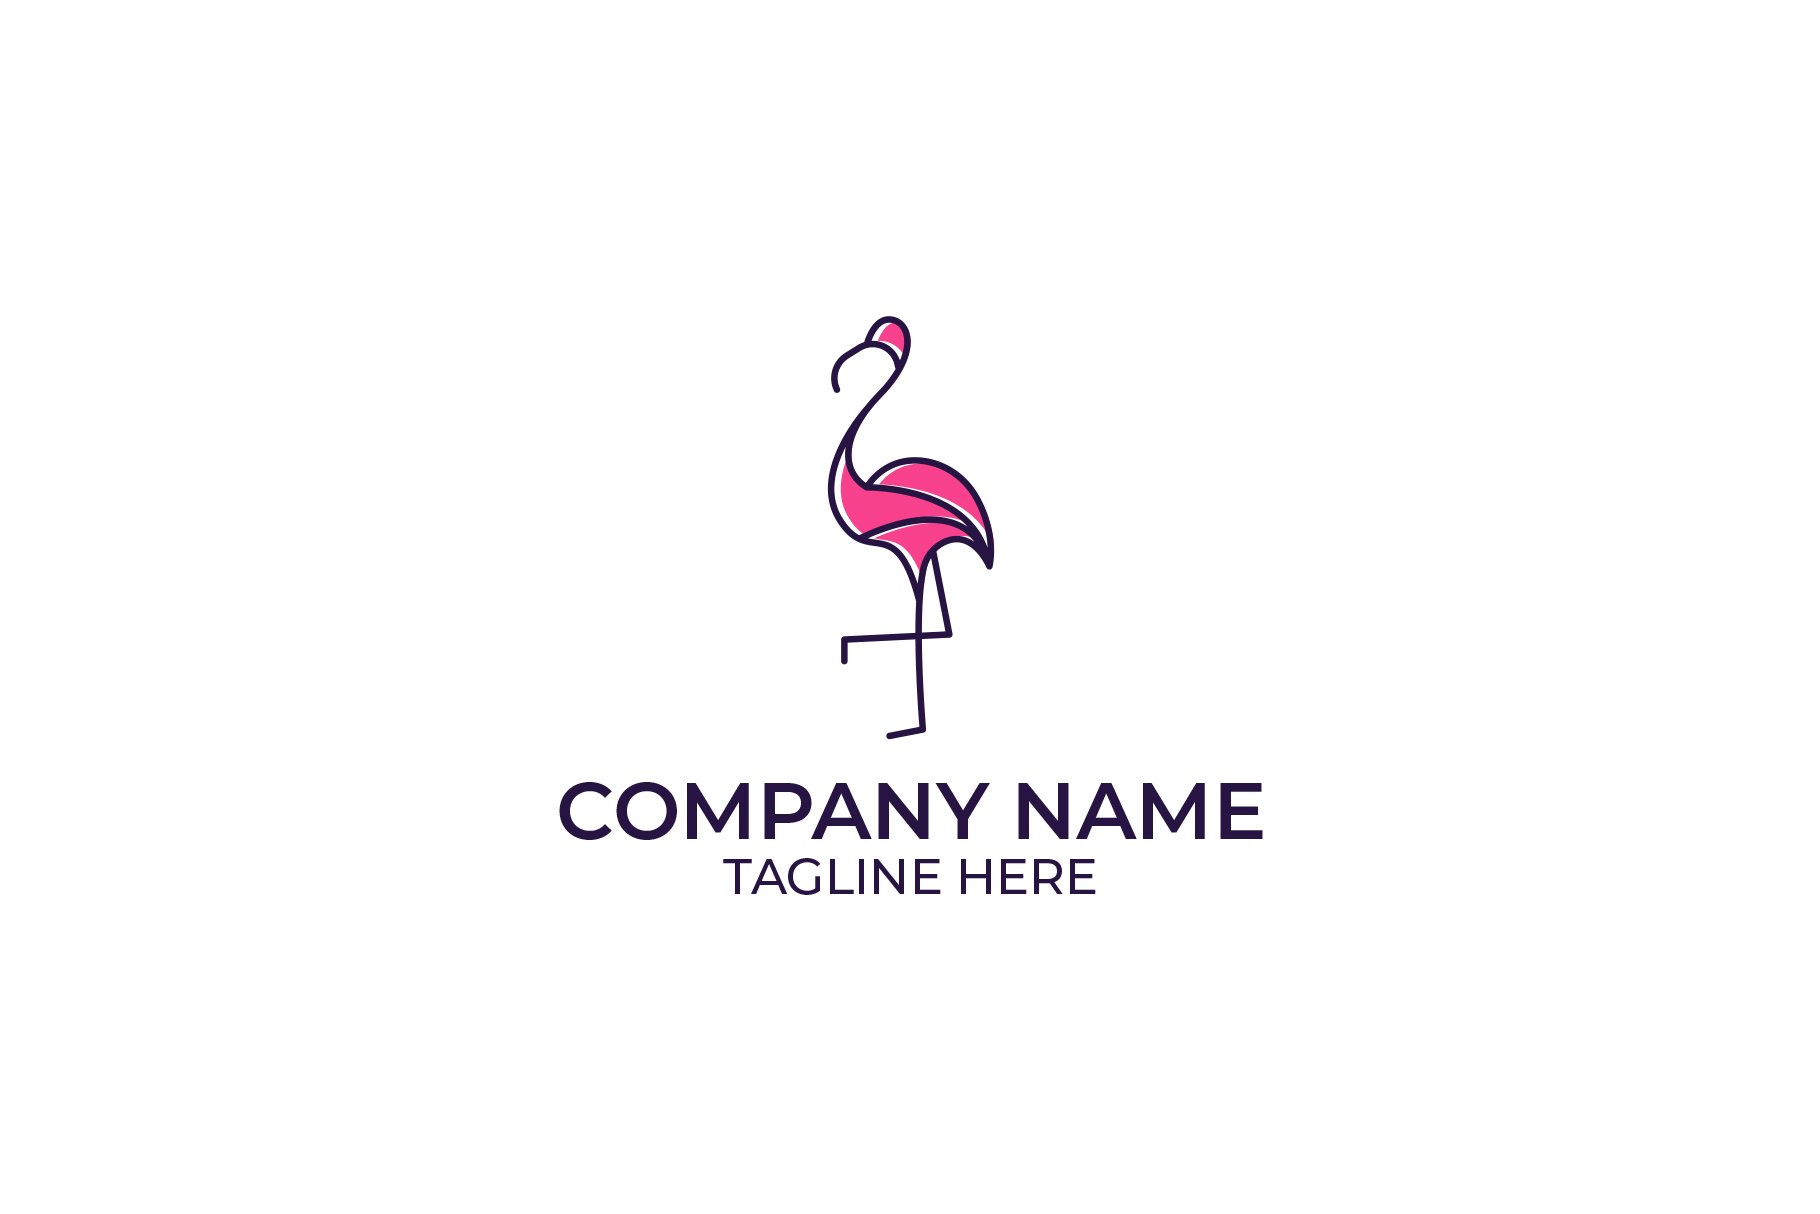 Flamingo Logo Design cover image.